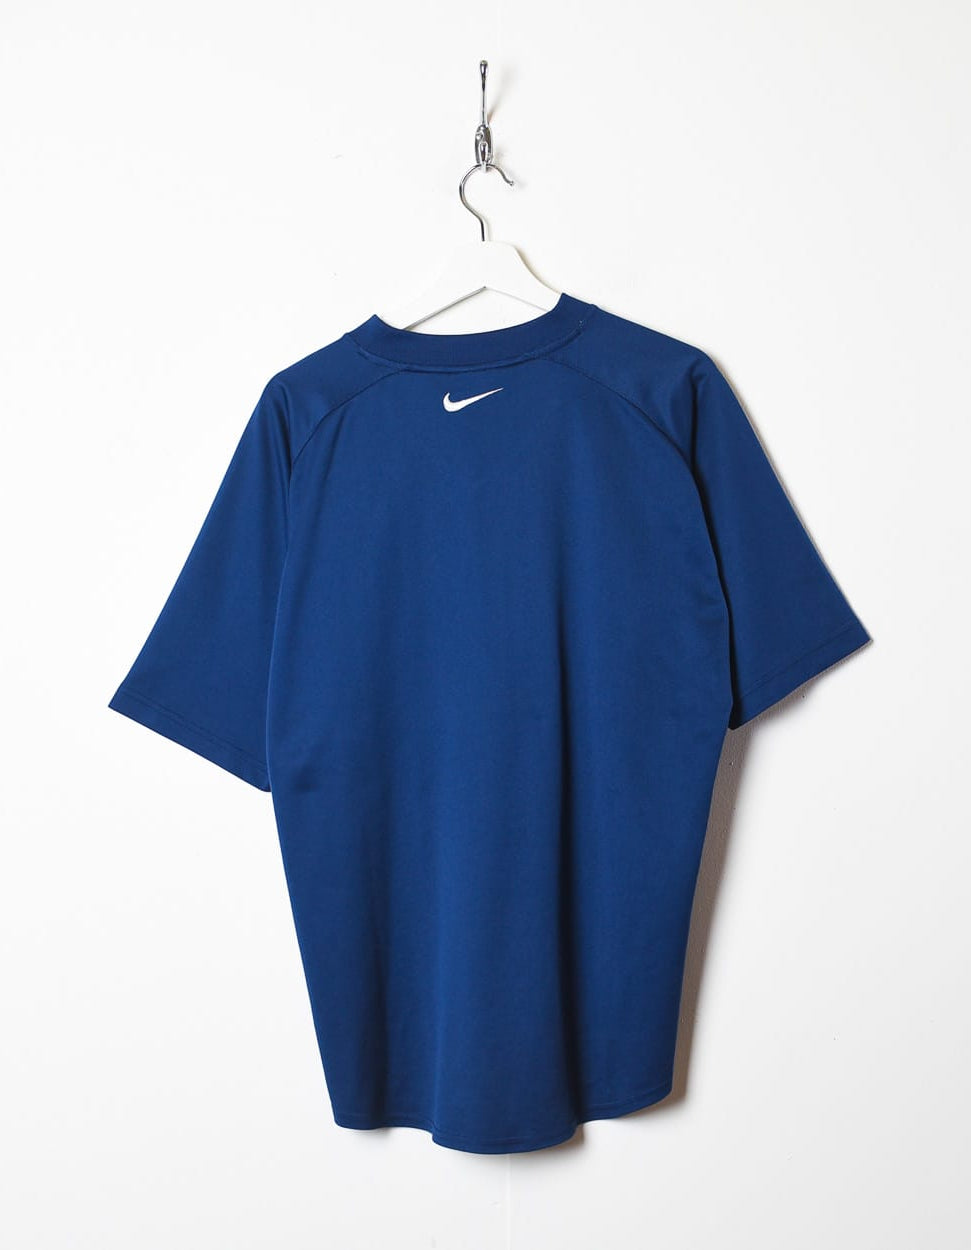 Navy Nike Total 90 T-Shirt - Large